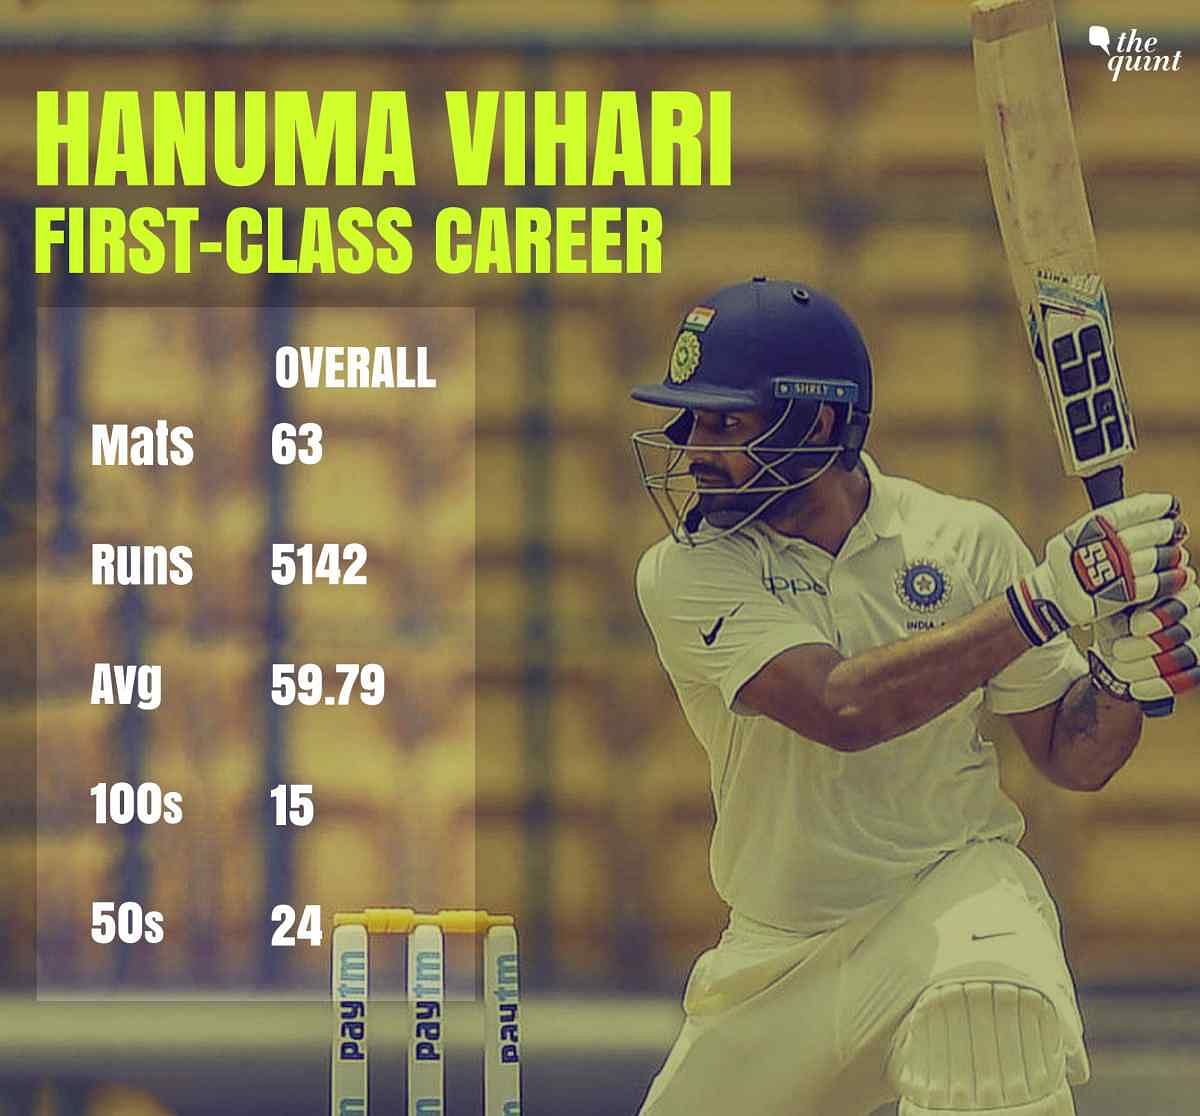 आंध्र प्रदेश के हनुमा विहारी को भारत-इंग्लैंड टेस्ट सीरीज के लिए टीम में चुना गया है. 